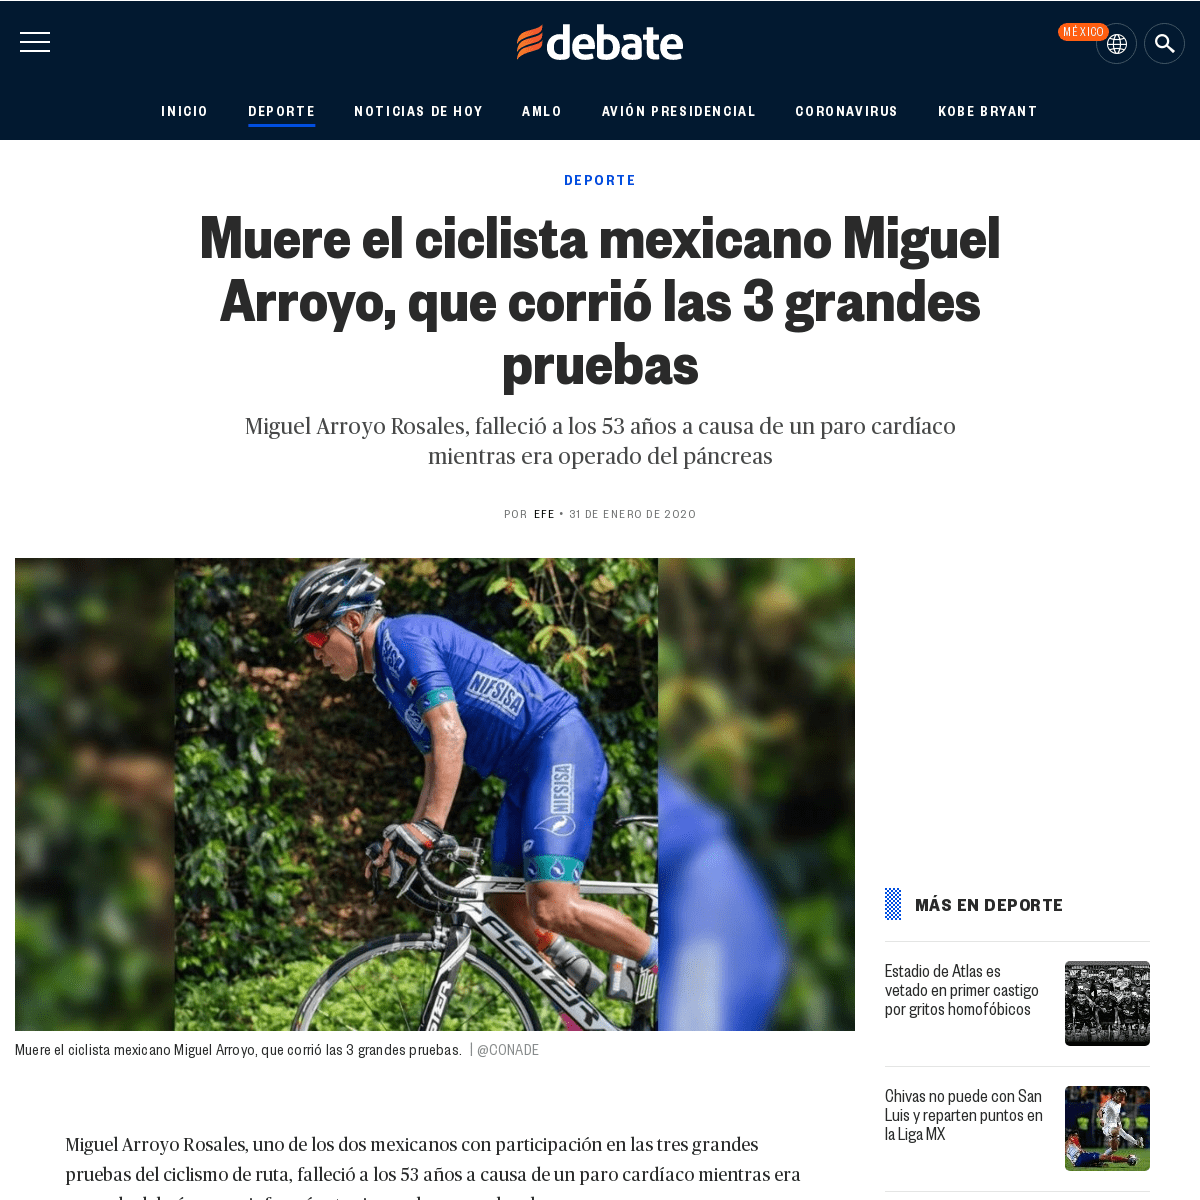 A complete backup of www.debate.com.mx/deportes/Muere-el-ciclista-mexicano-Miguel-Arroyo-que-corrio-las-3-grandes-pruebas-202001